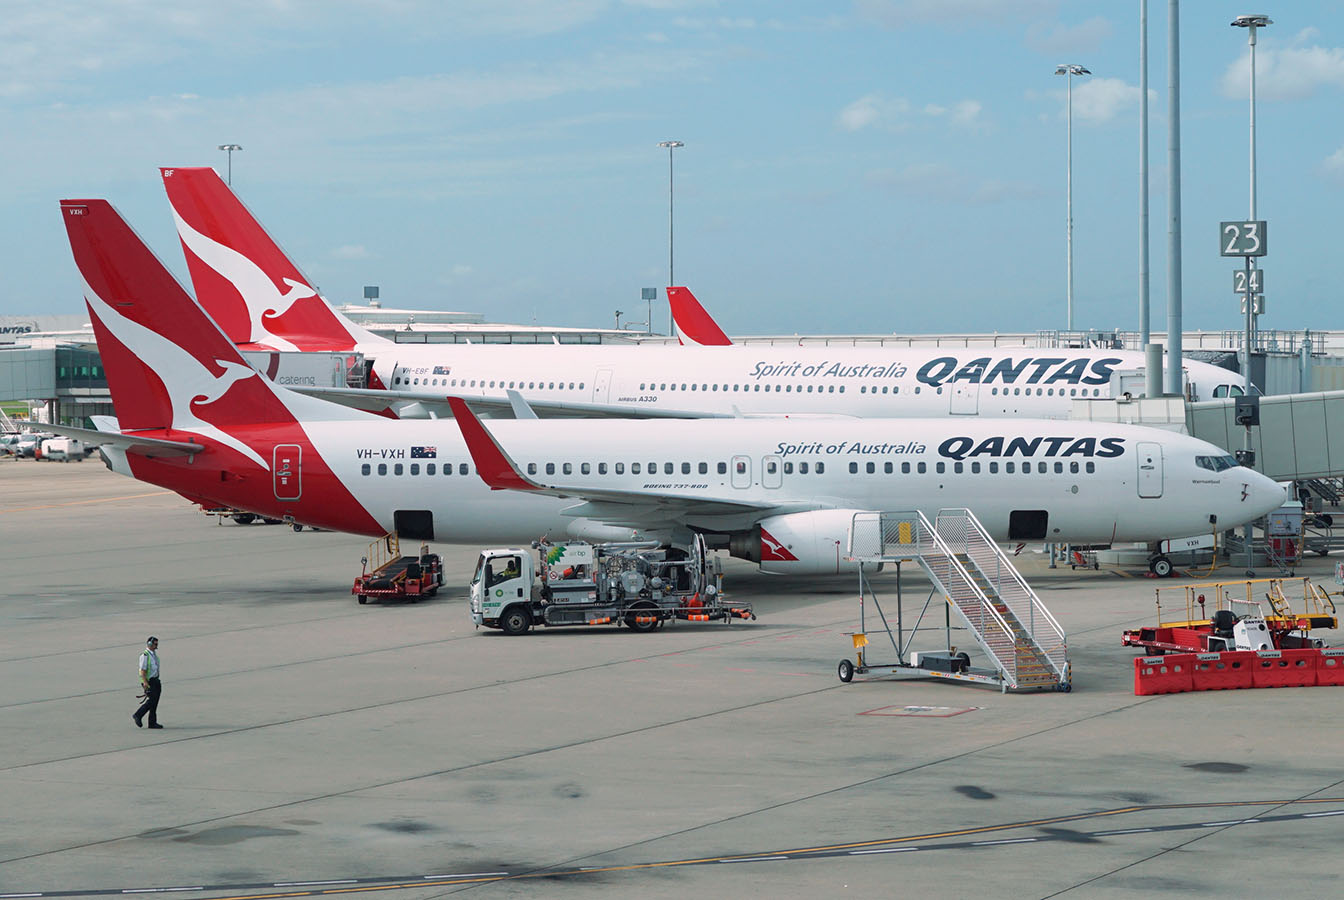 Qantas planes at Airport